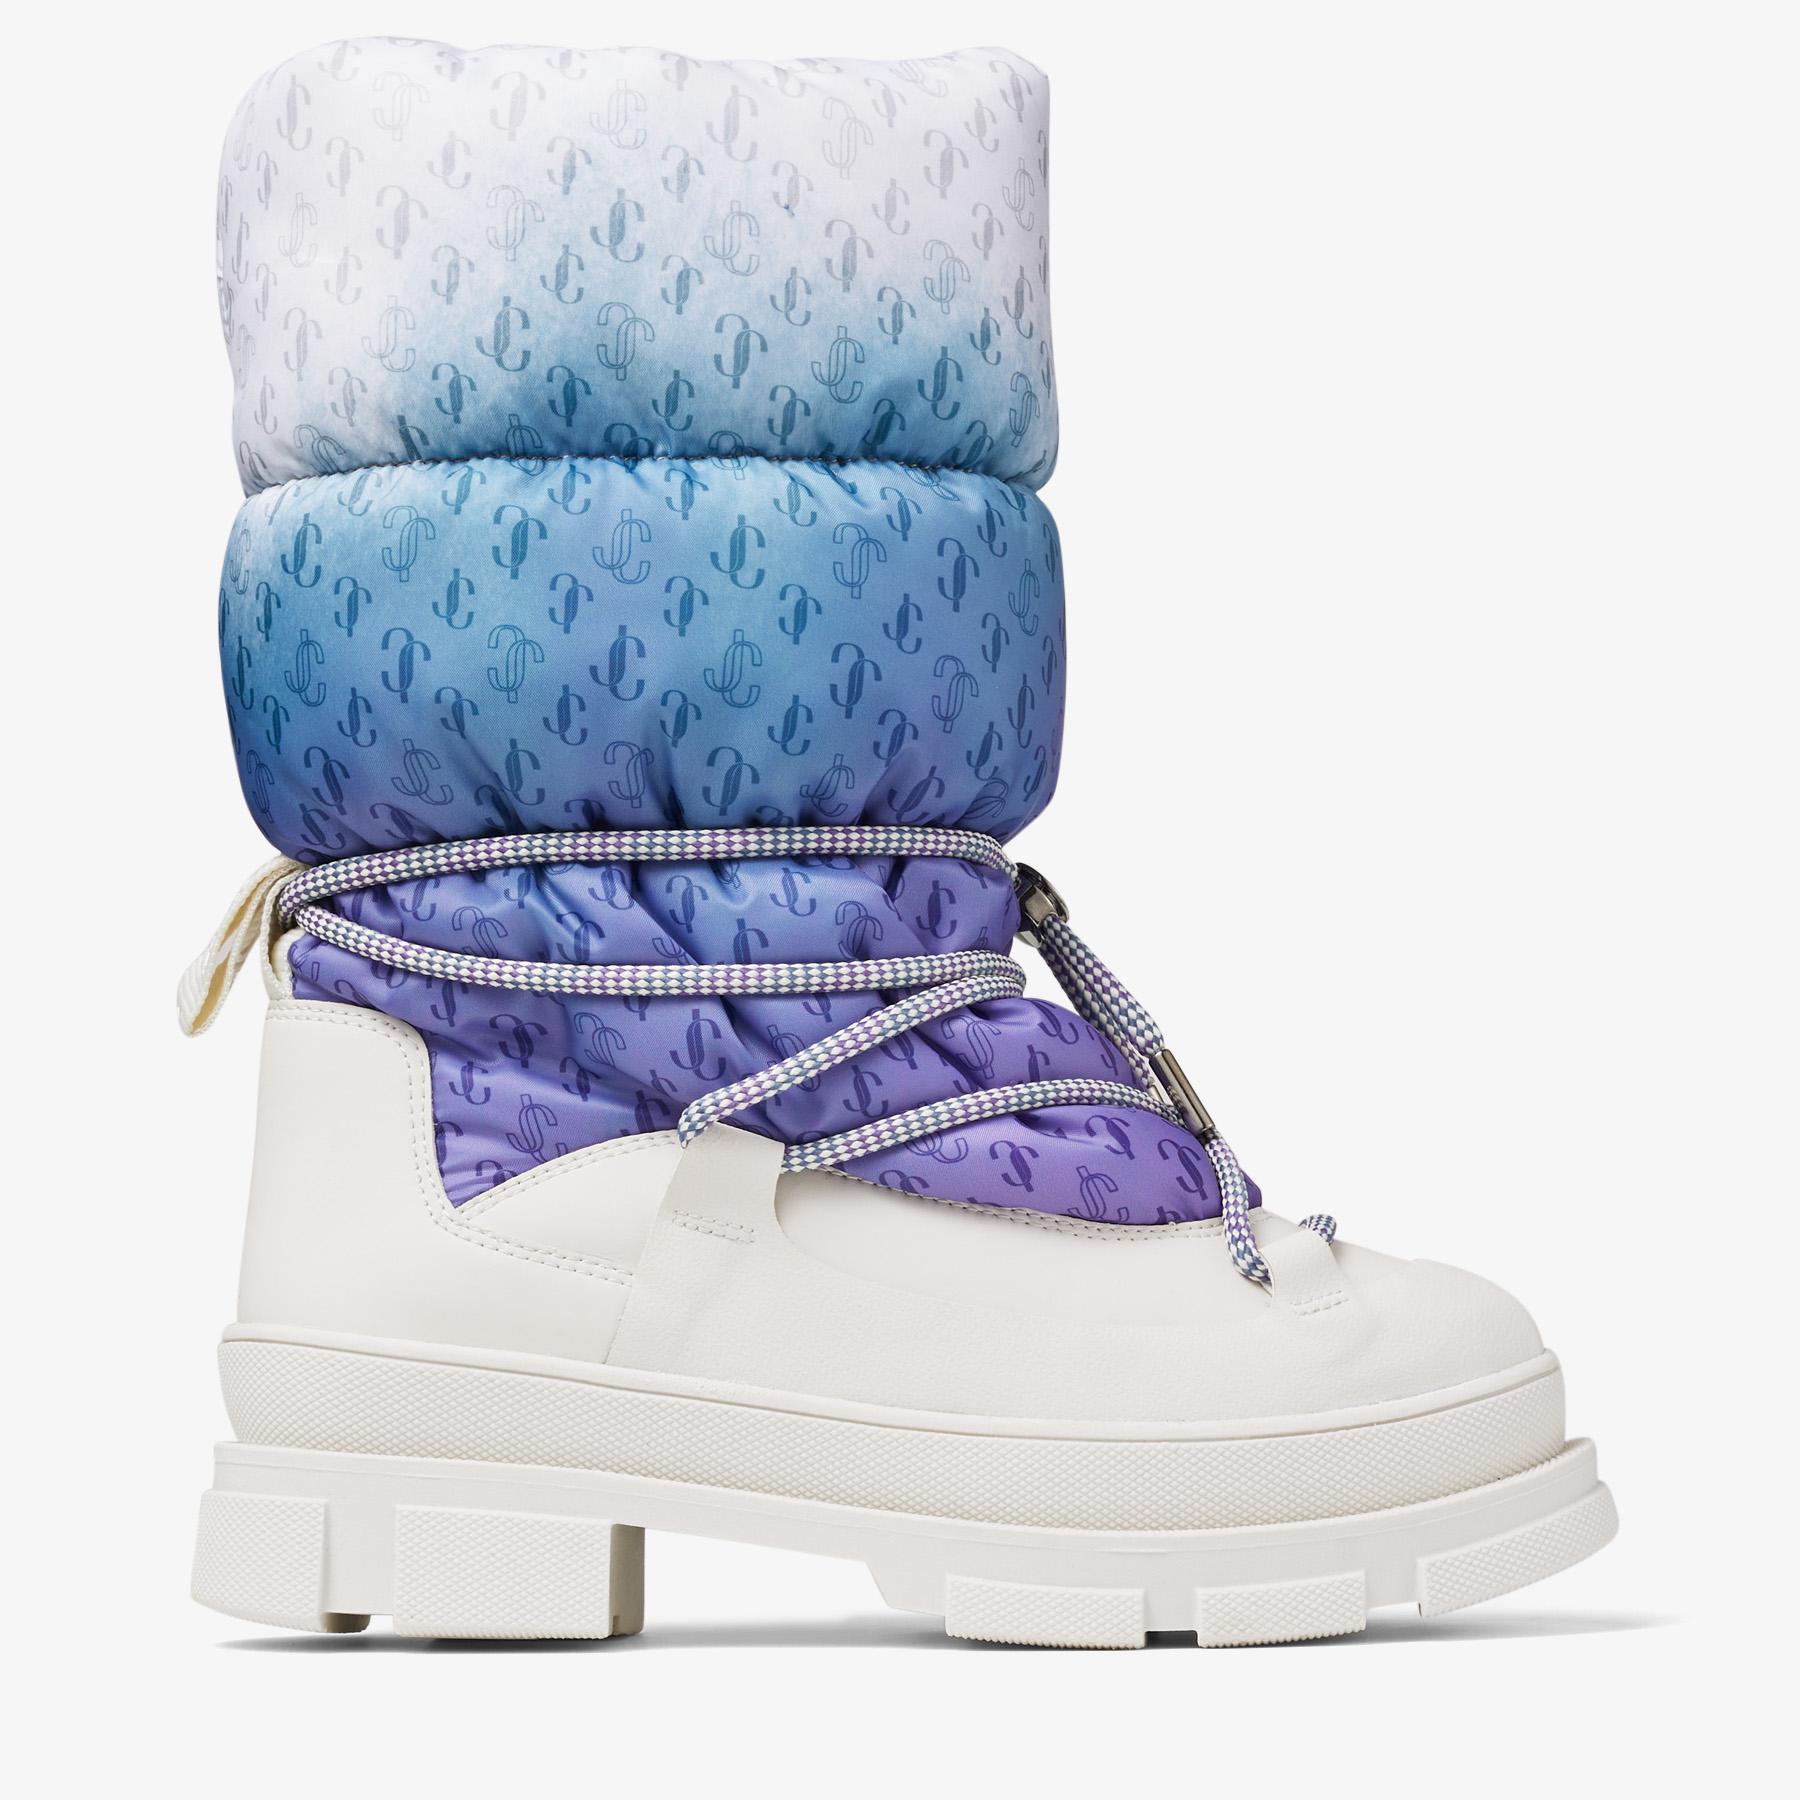 Chanel Tweed Sneaker Boot  Bijoux Bag Spa  Consignment